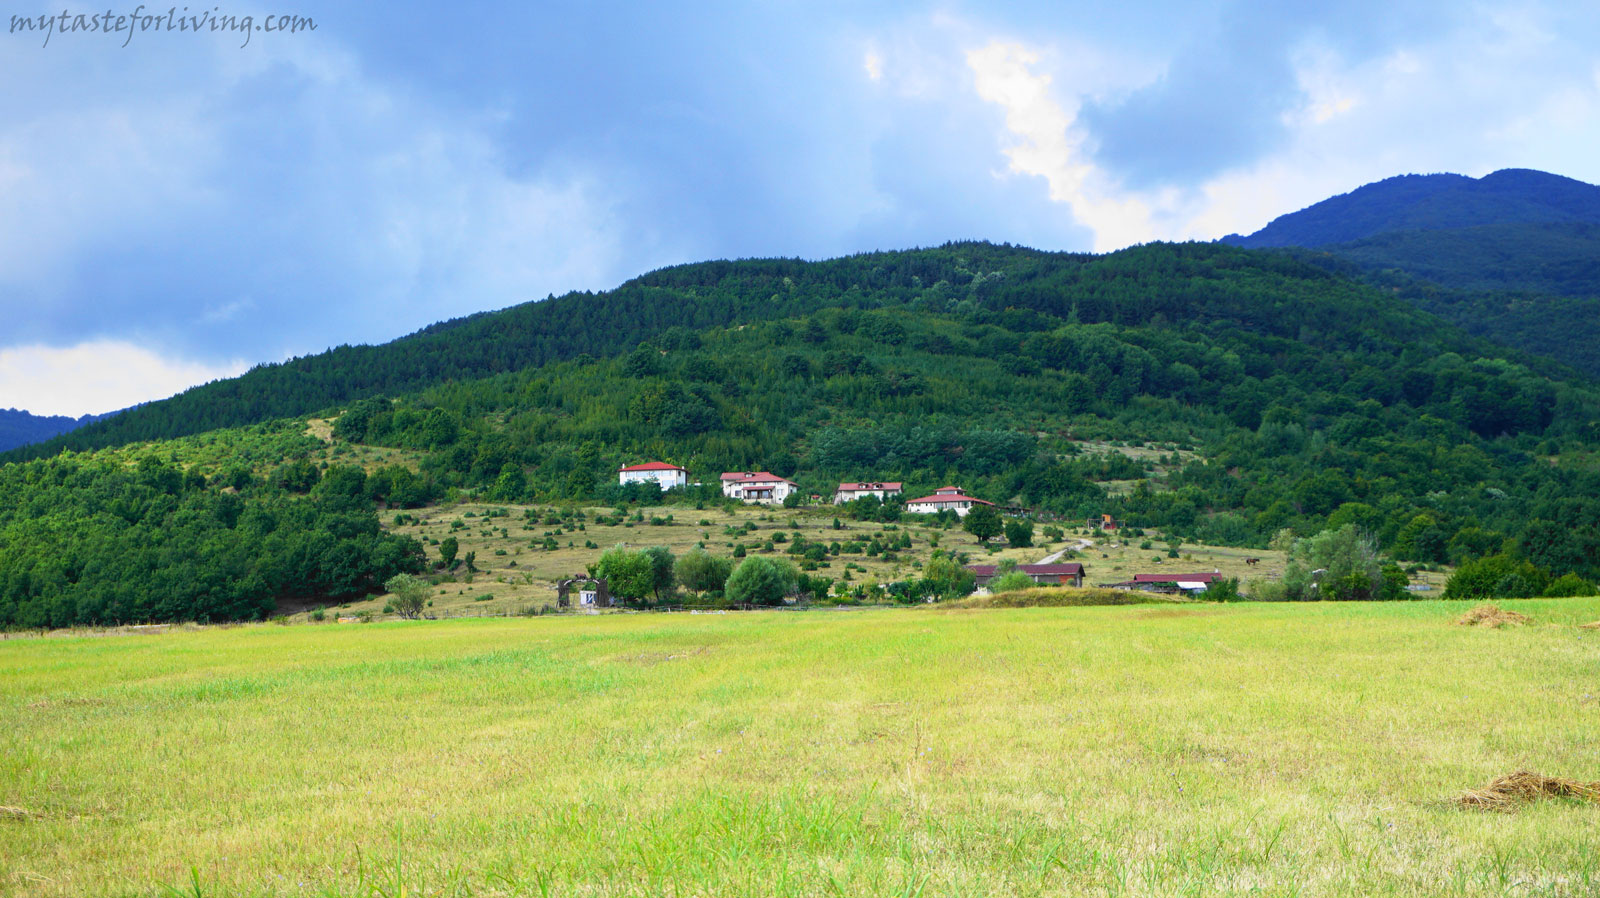 Ранчо „Дивият град“ (Ranch "Wild City") е поредното кътче в България, направено с любов и желание, така че с удоволствие да си там и да искаш да го посетиш отново. 